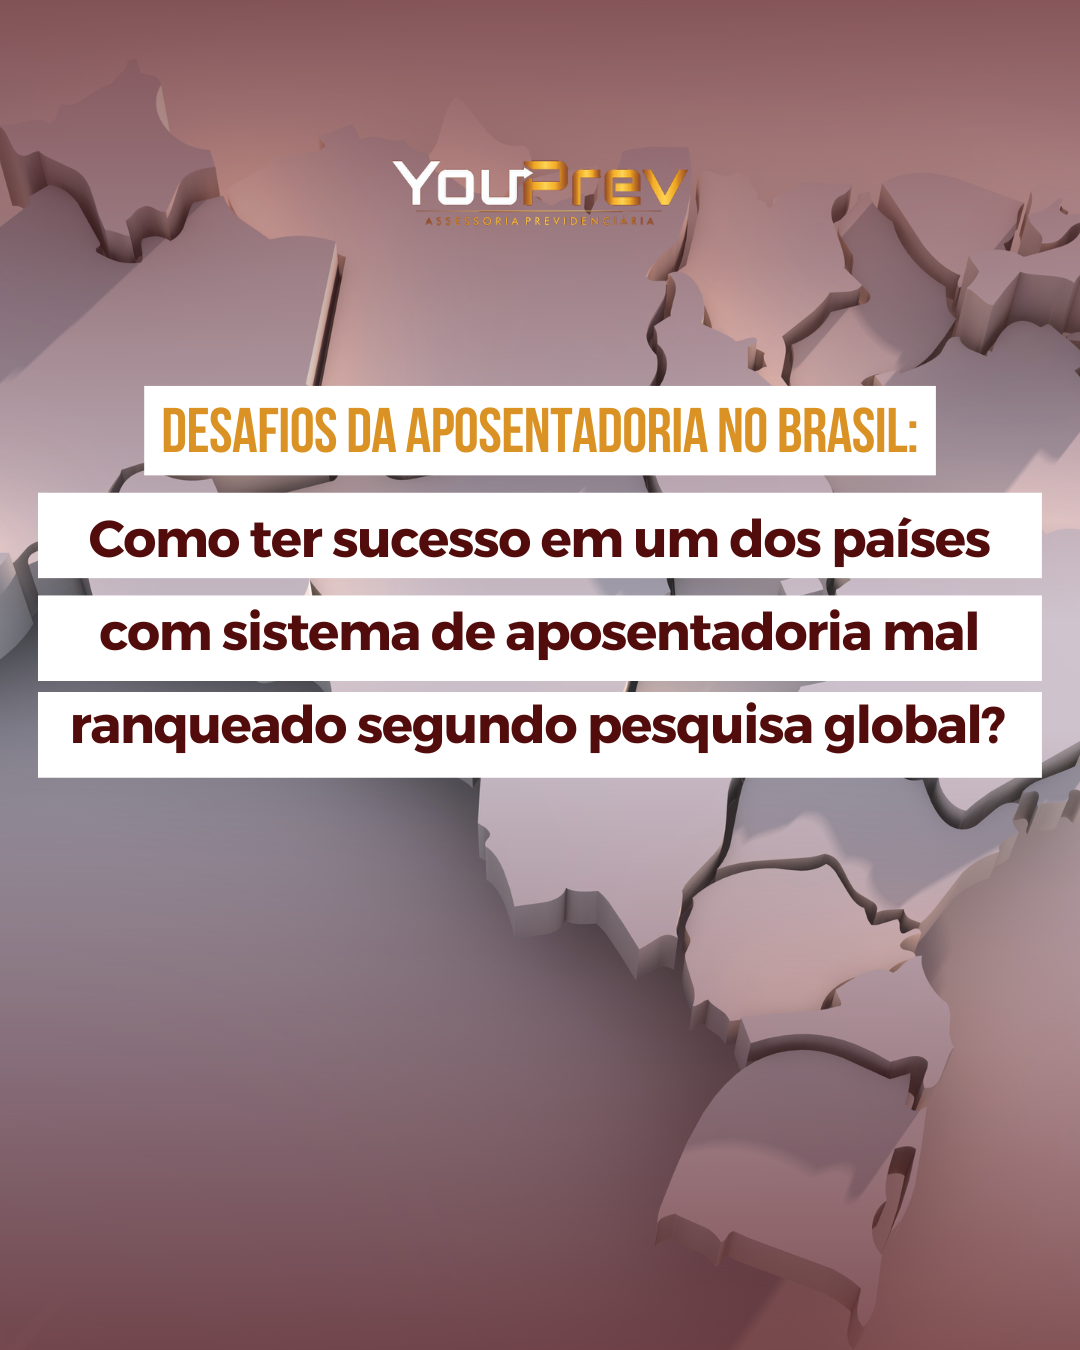 Você está visualizando atualmente Os desafios da aposentadoria no Brasil